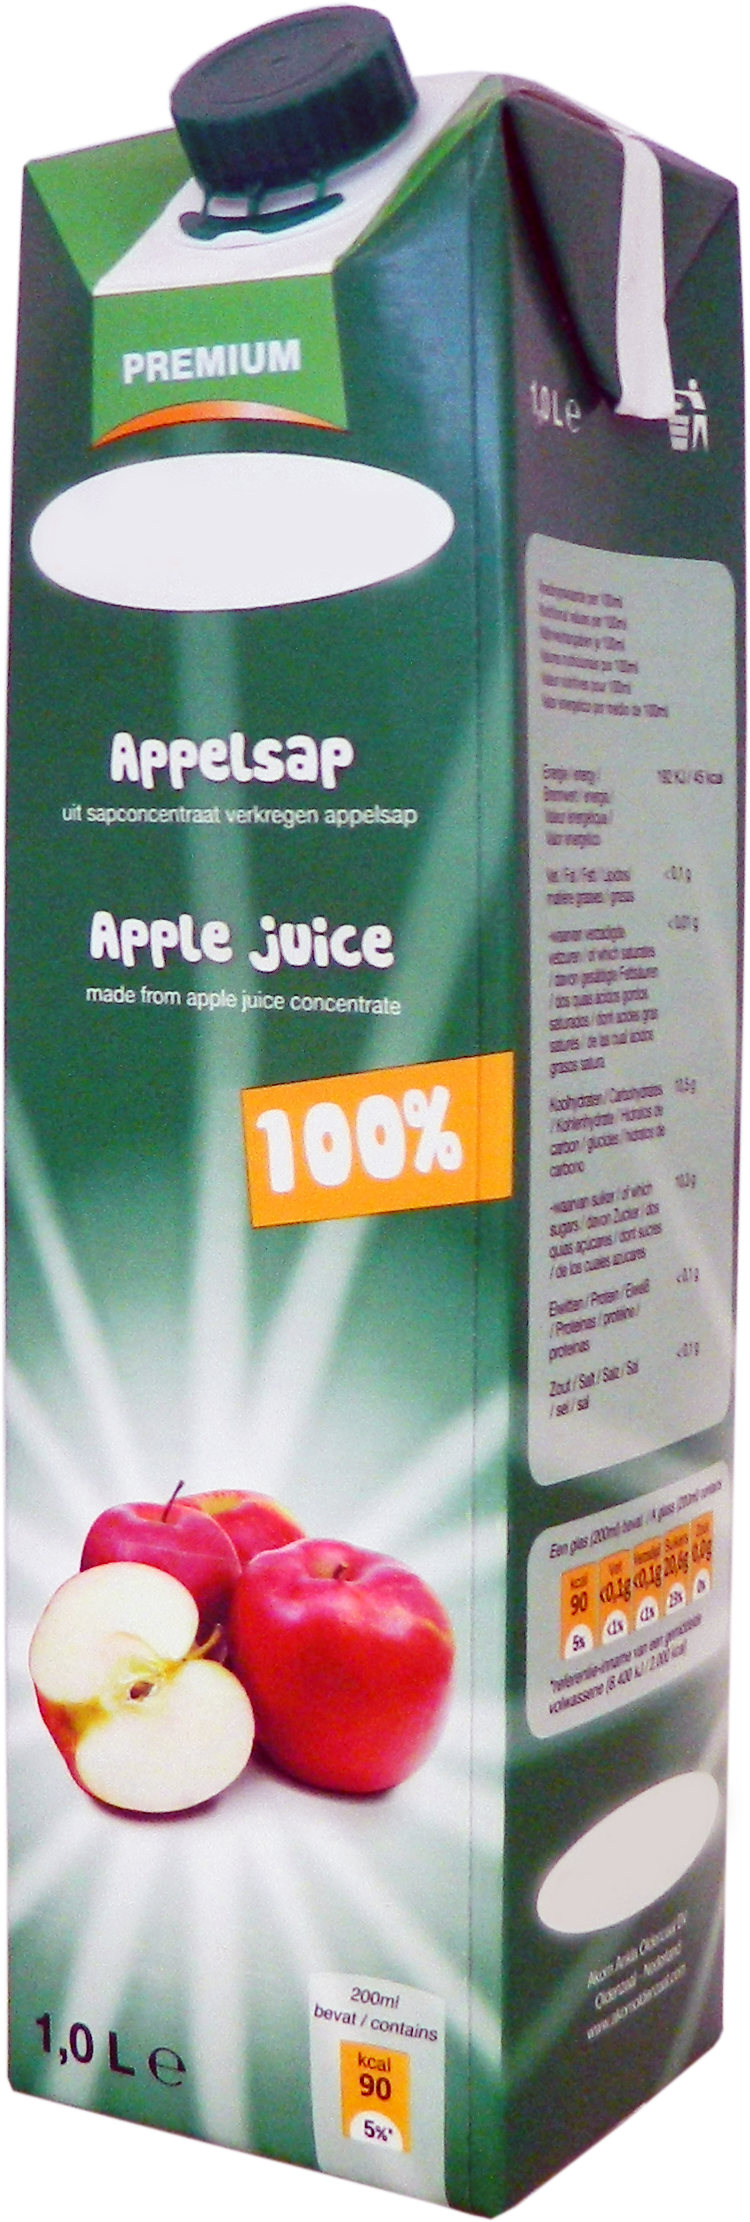 Premium Apple juice 1,0 liter